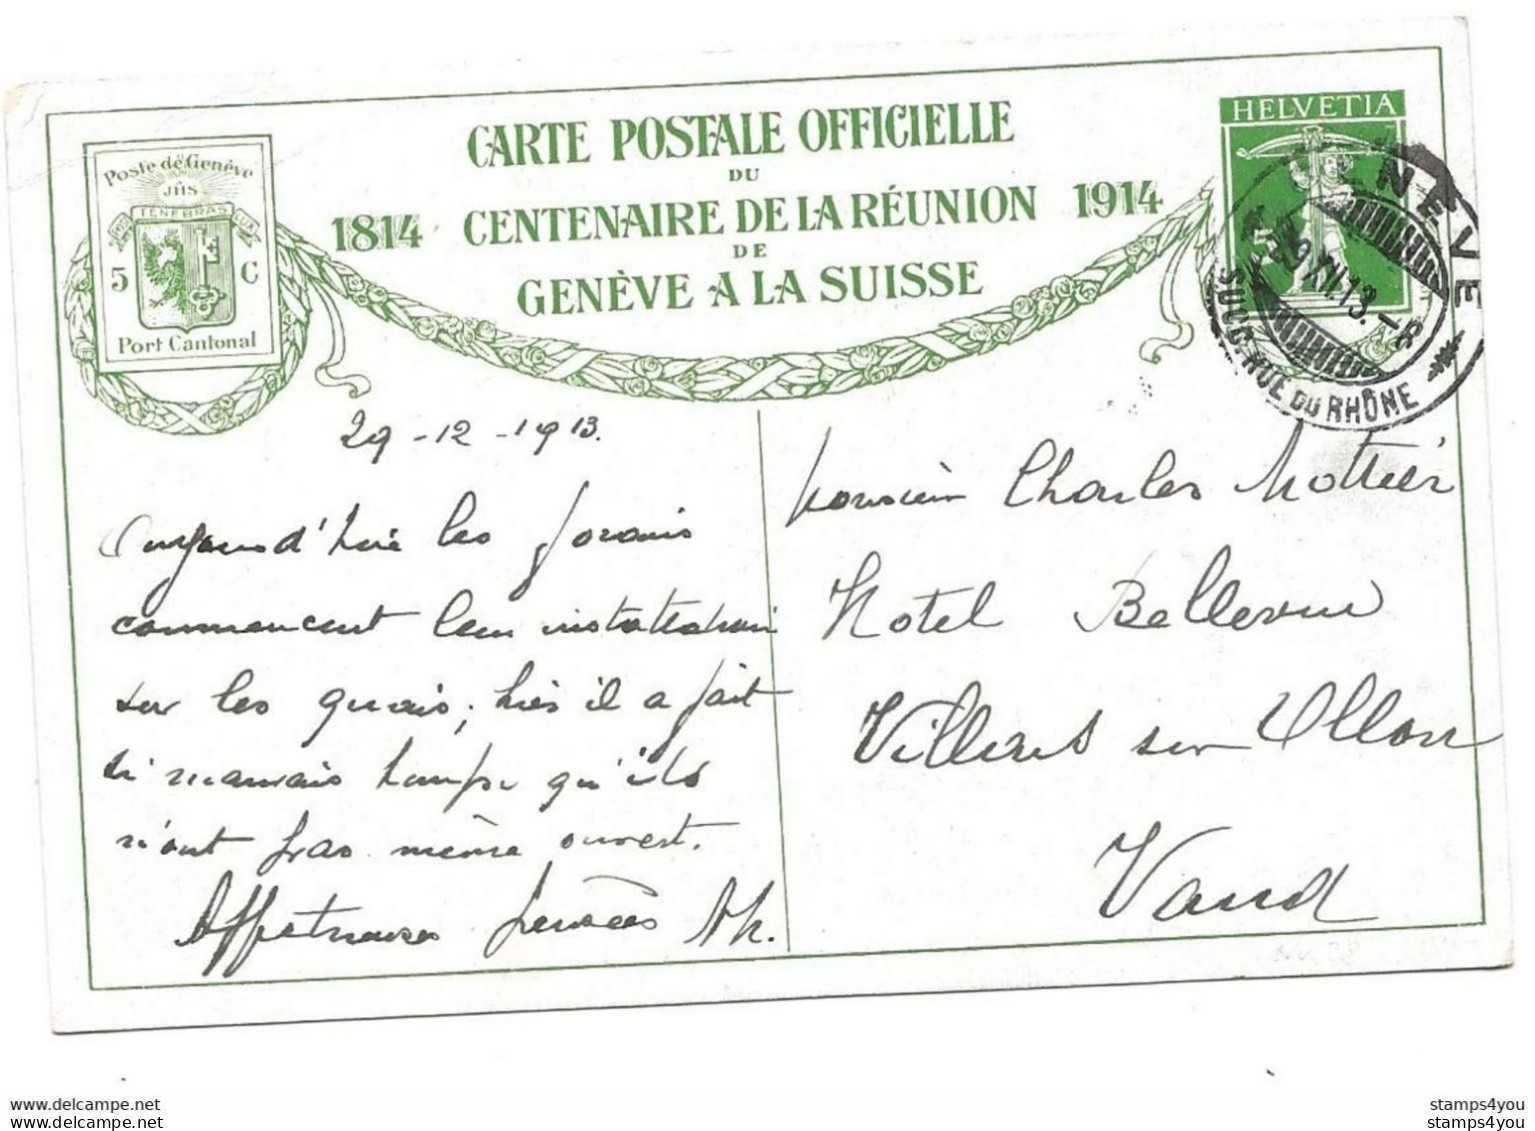 103 - 71 - Entier Postal Centenaire Réunion Genève à La Suisse 1914 "Accolade Au Pont Noir" Cachet Genève 1913 - Entiers Postaux